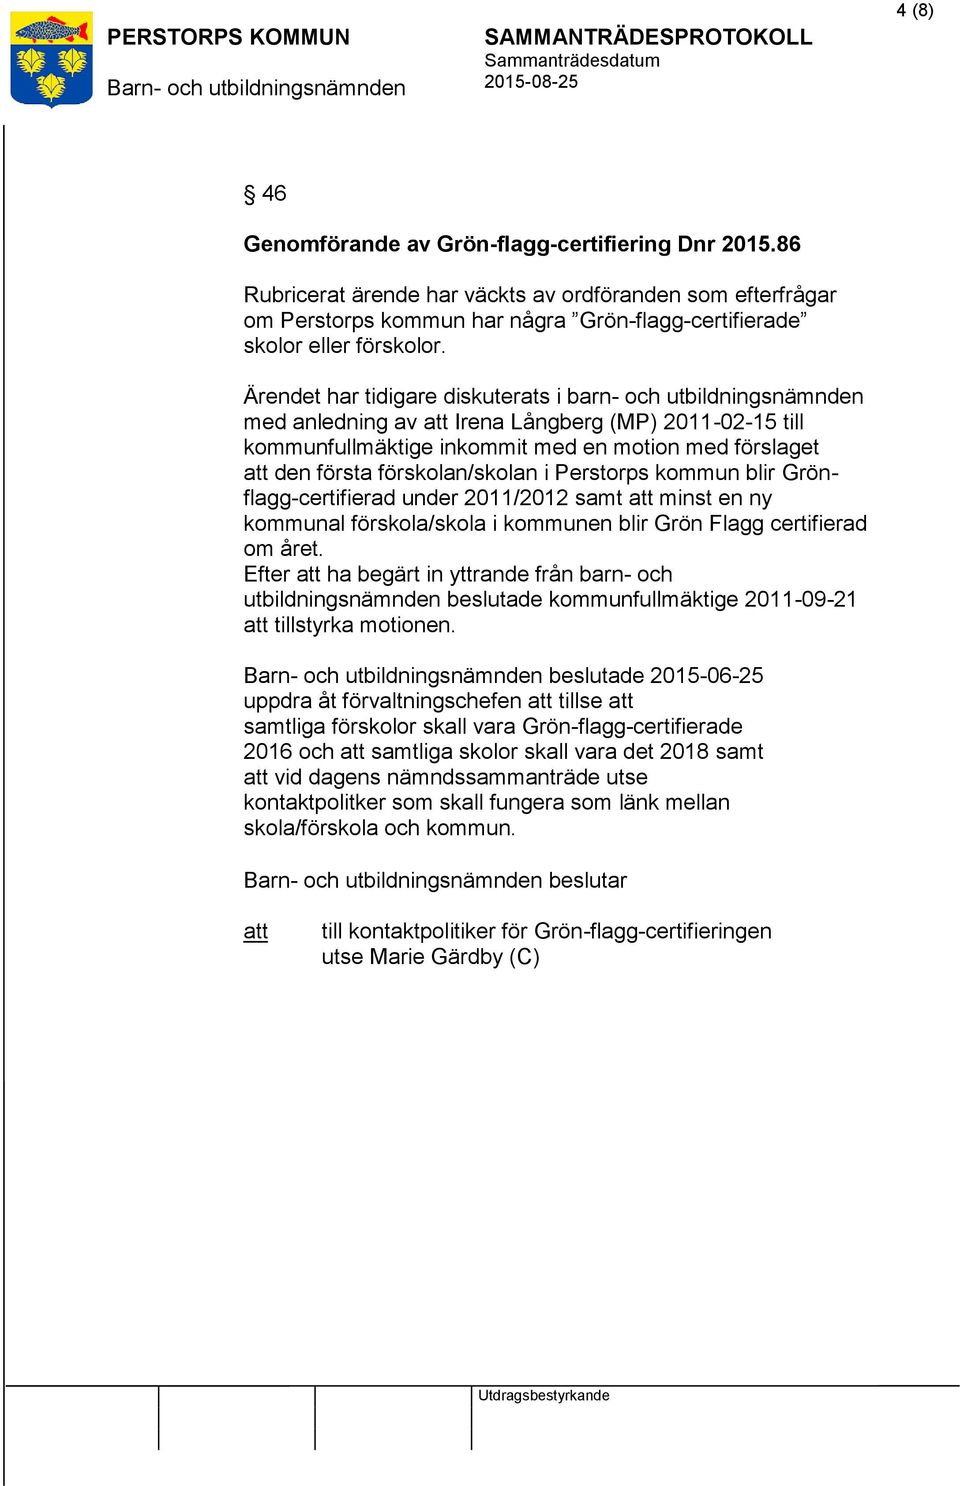 i Perstorps kommun blir Grönflagg-certifierad under 2011/2012 samt minst en ny kommunal förskola/skola i kommunen blir Grön Flagg certifierad om året.